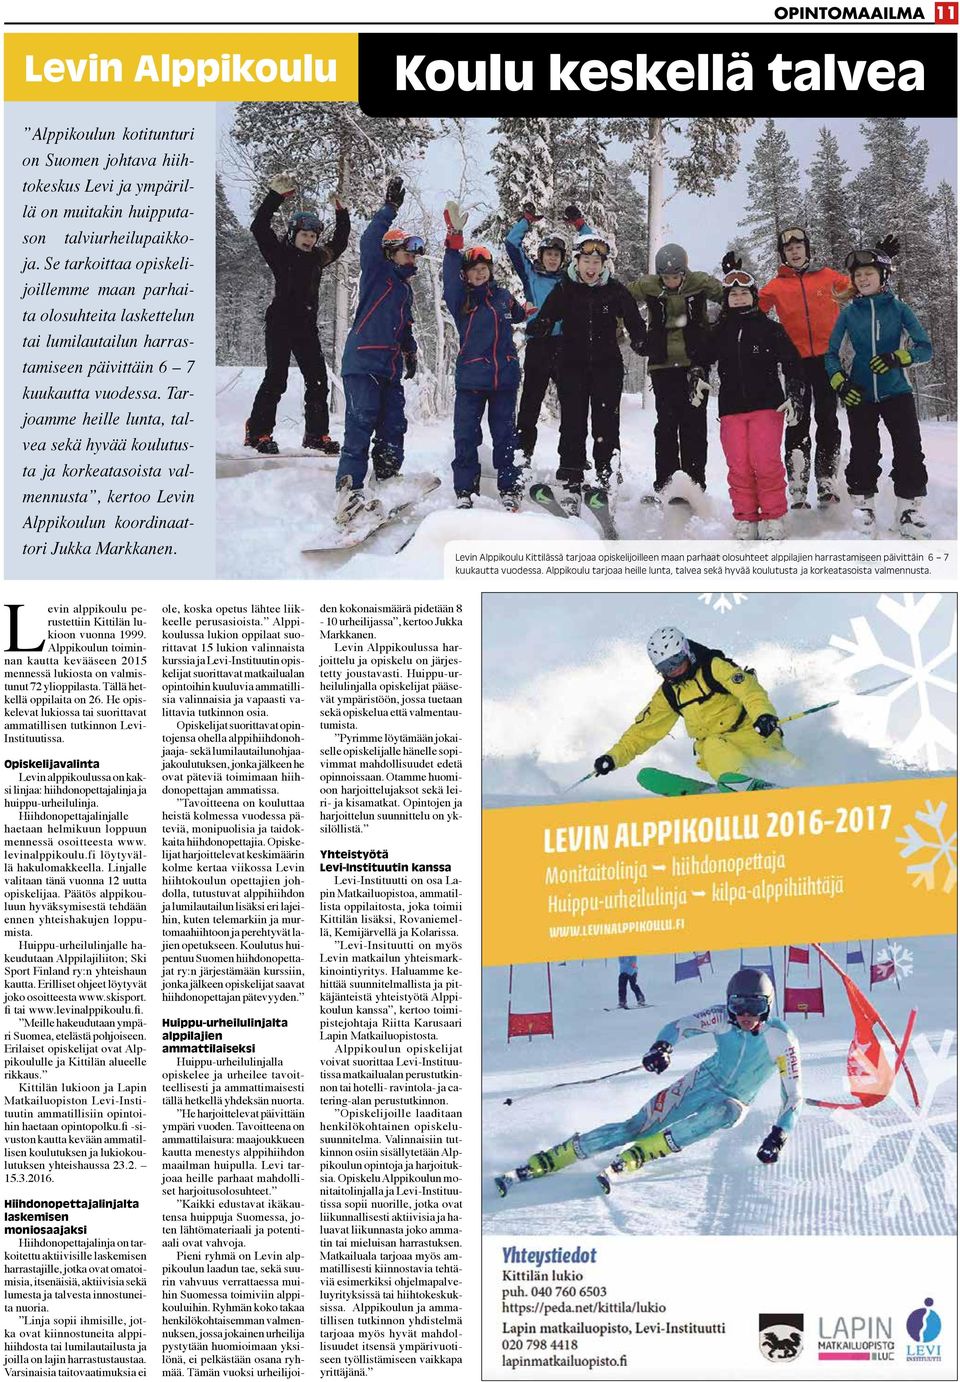 Tarjoamme heille lunta, talvea sekä hyvää koulutusta ja korkeatasoista valmennusta, kertoo Levin Alppikoulun koordinaattori Jukka Markkanen.